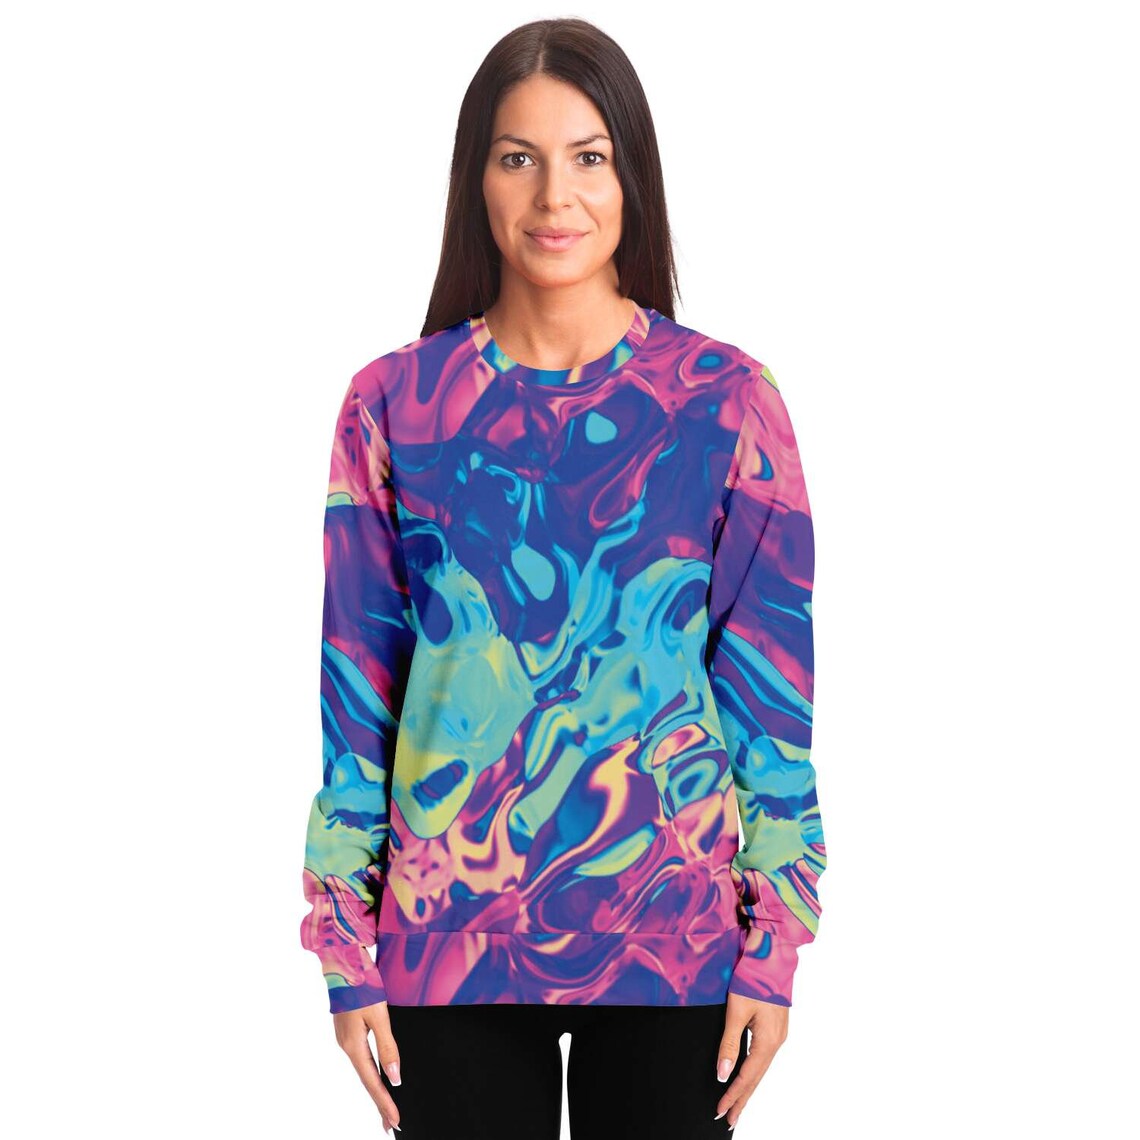 Colorful Holographic Iridescent Sweatshirt - Etsy UK